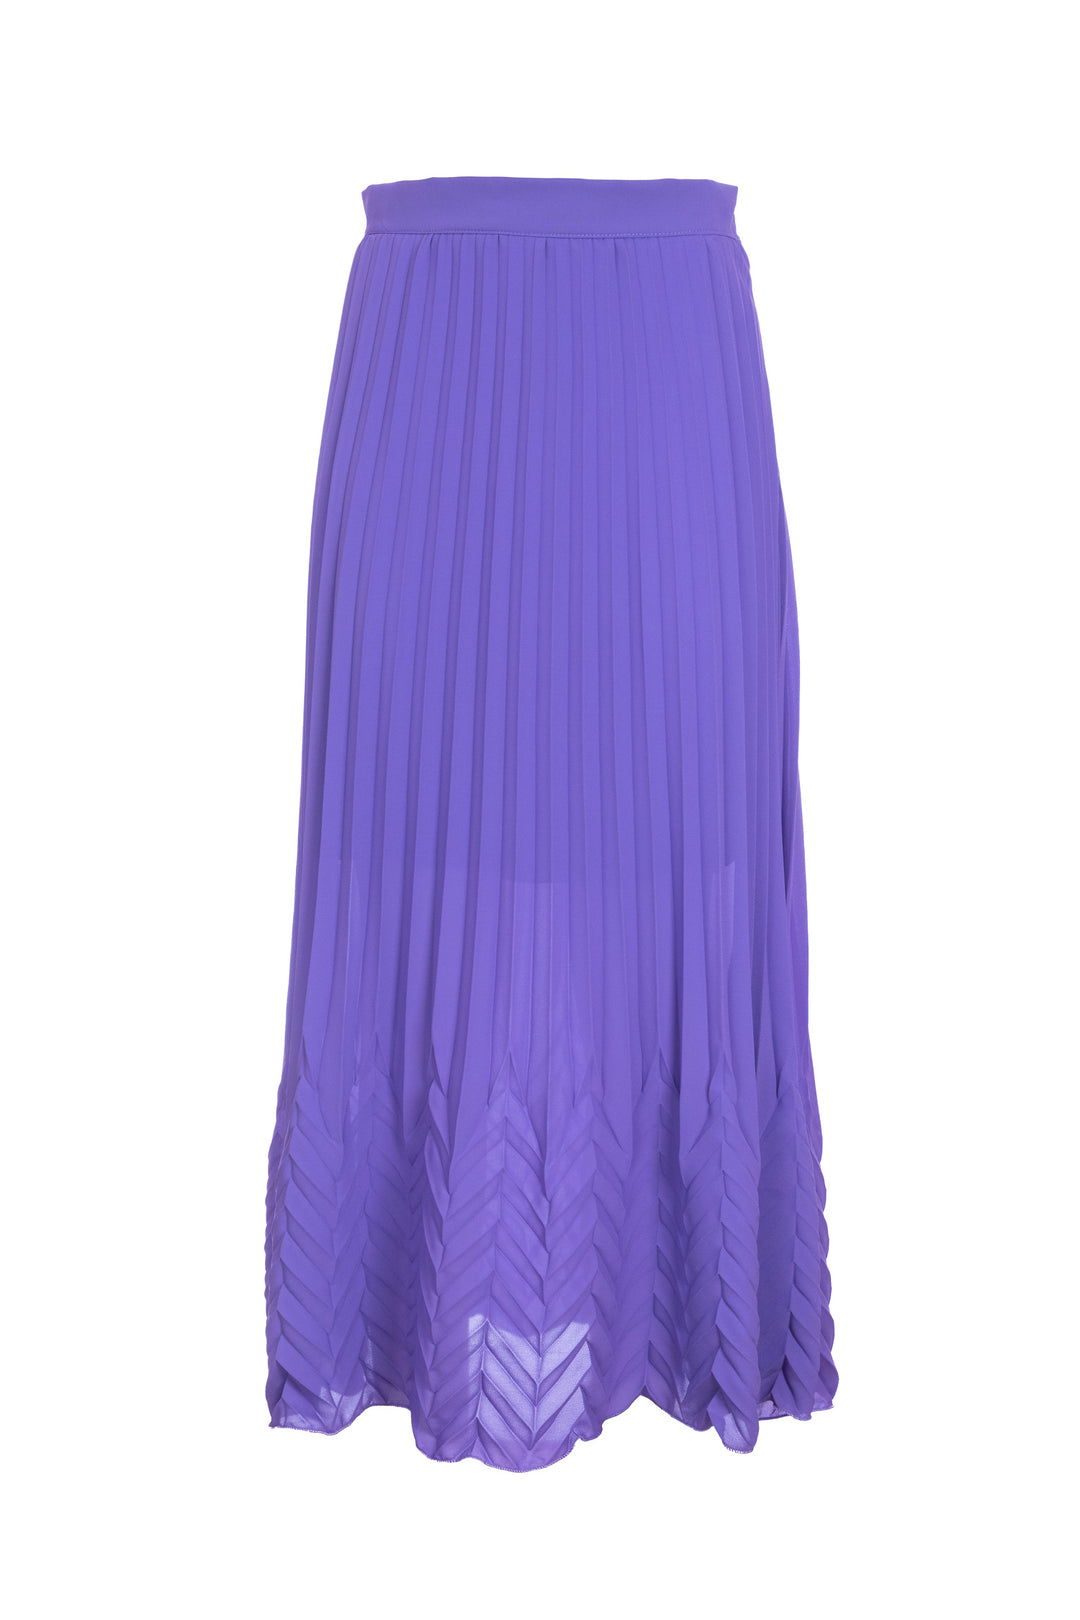 KAOS Jupe longue plissée violette en georgette PP1GX015 | Mancinelli 1954